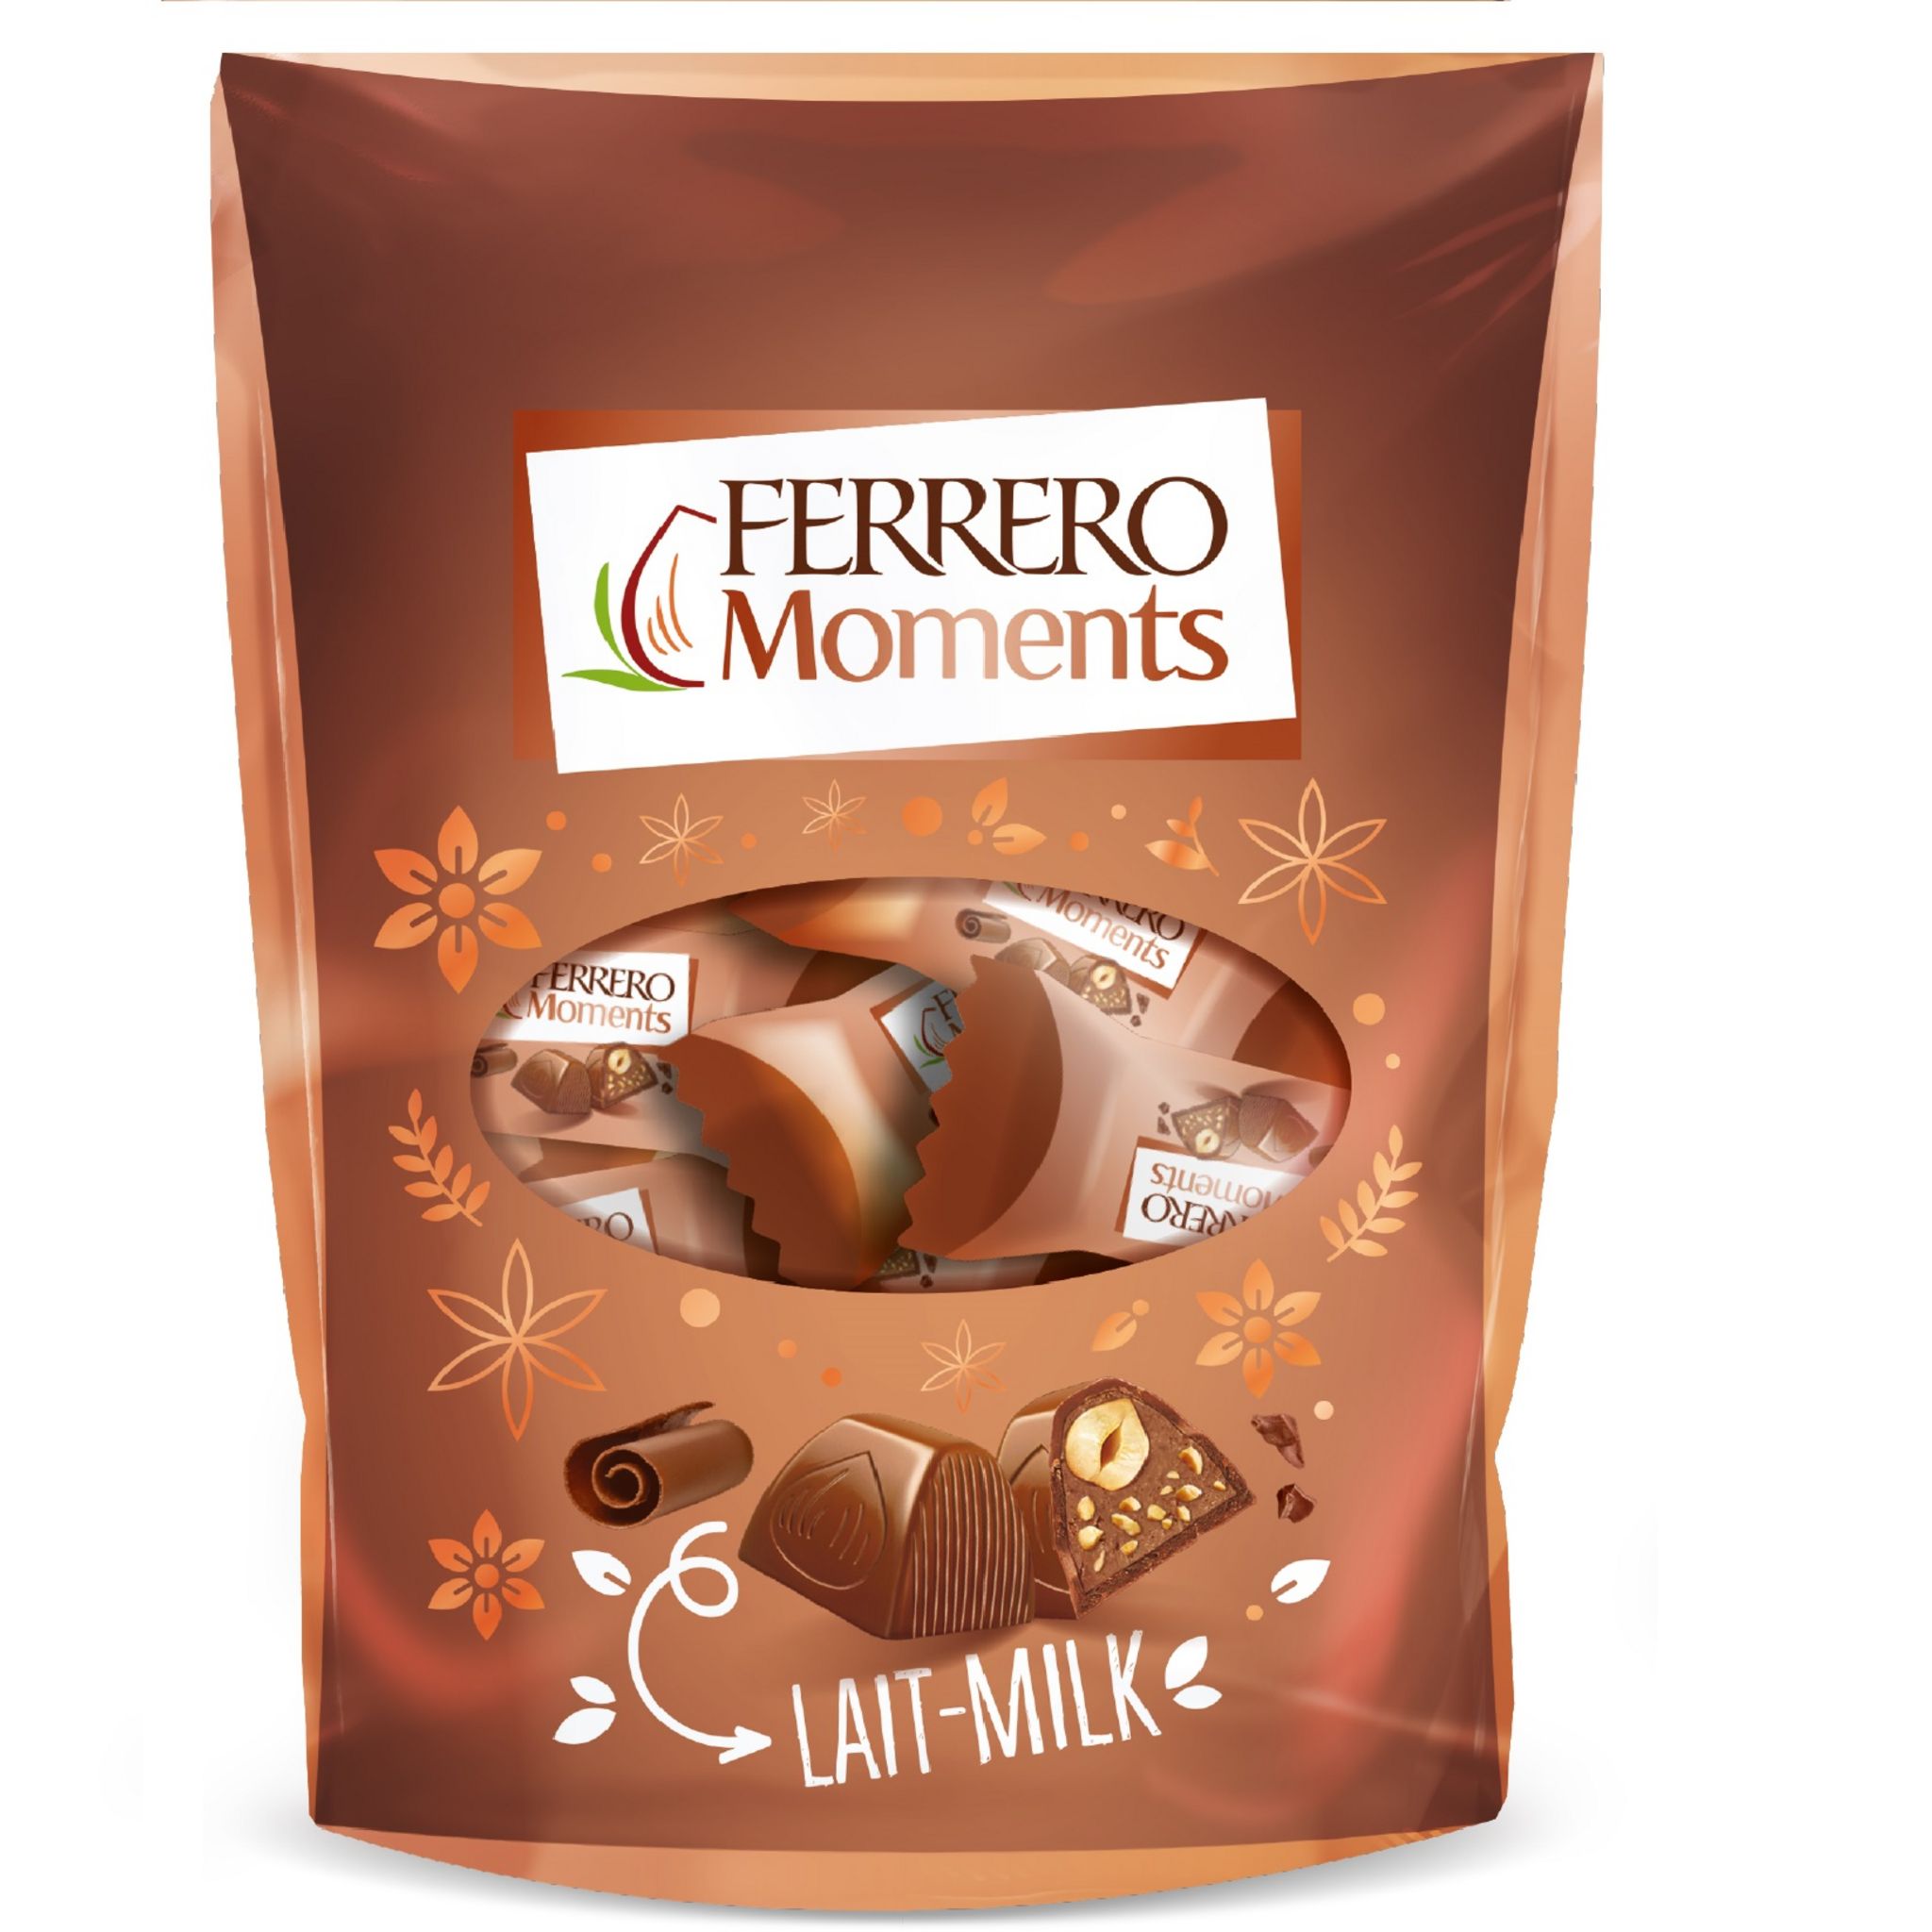 Ferrero Moment's